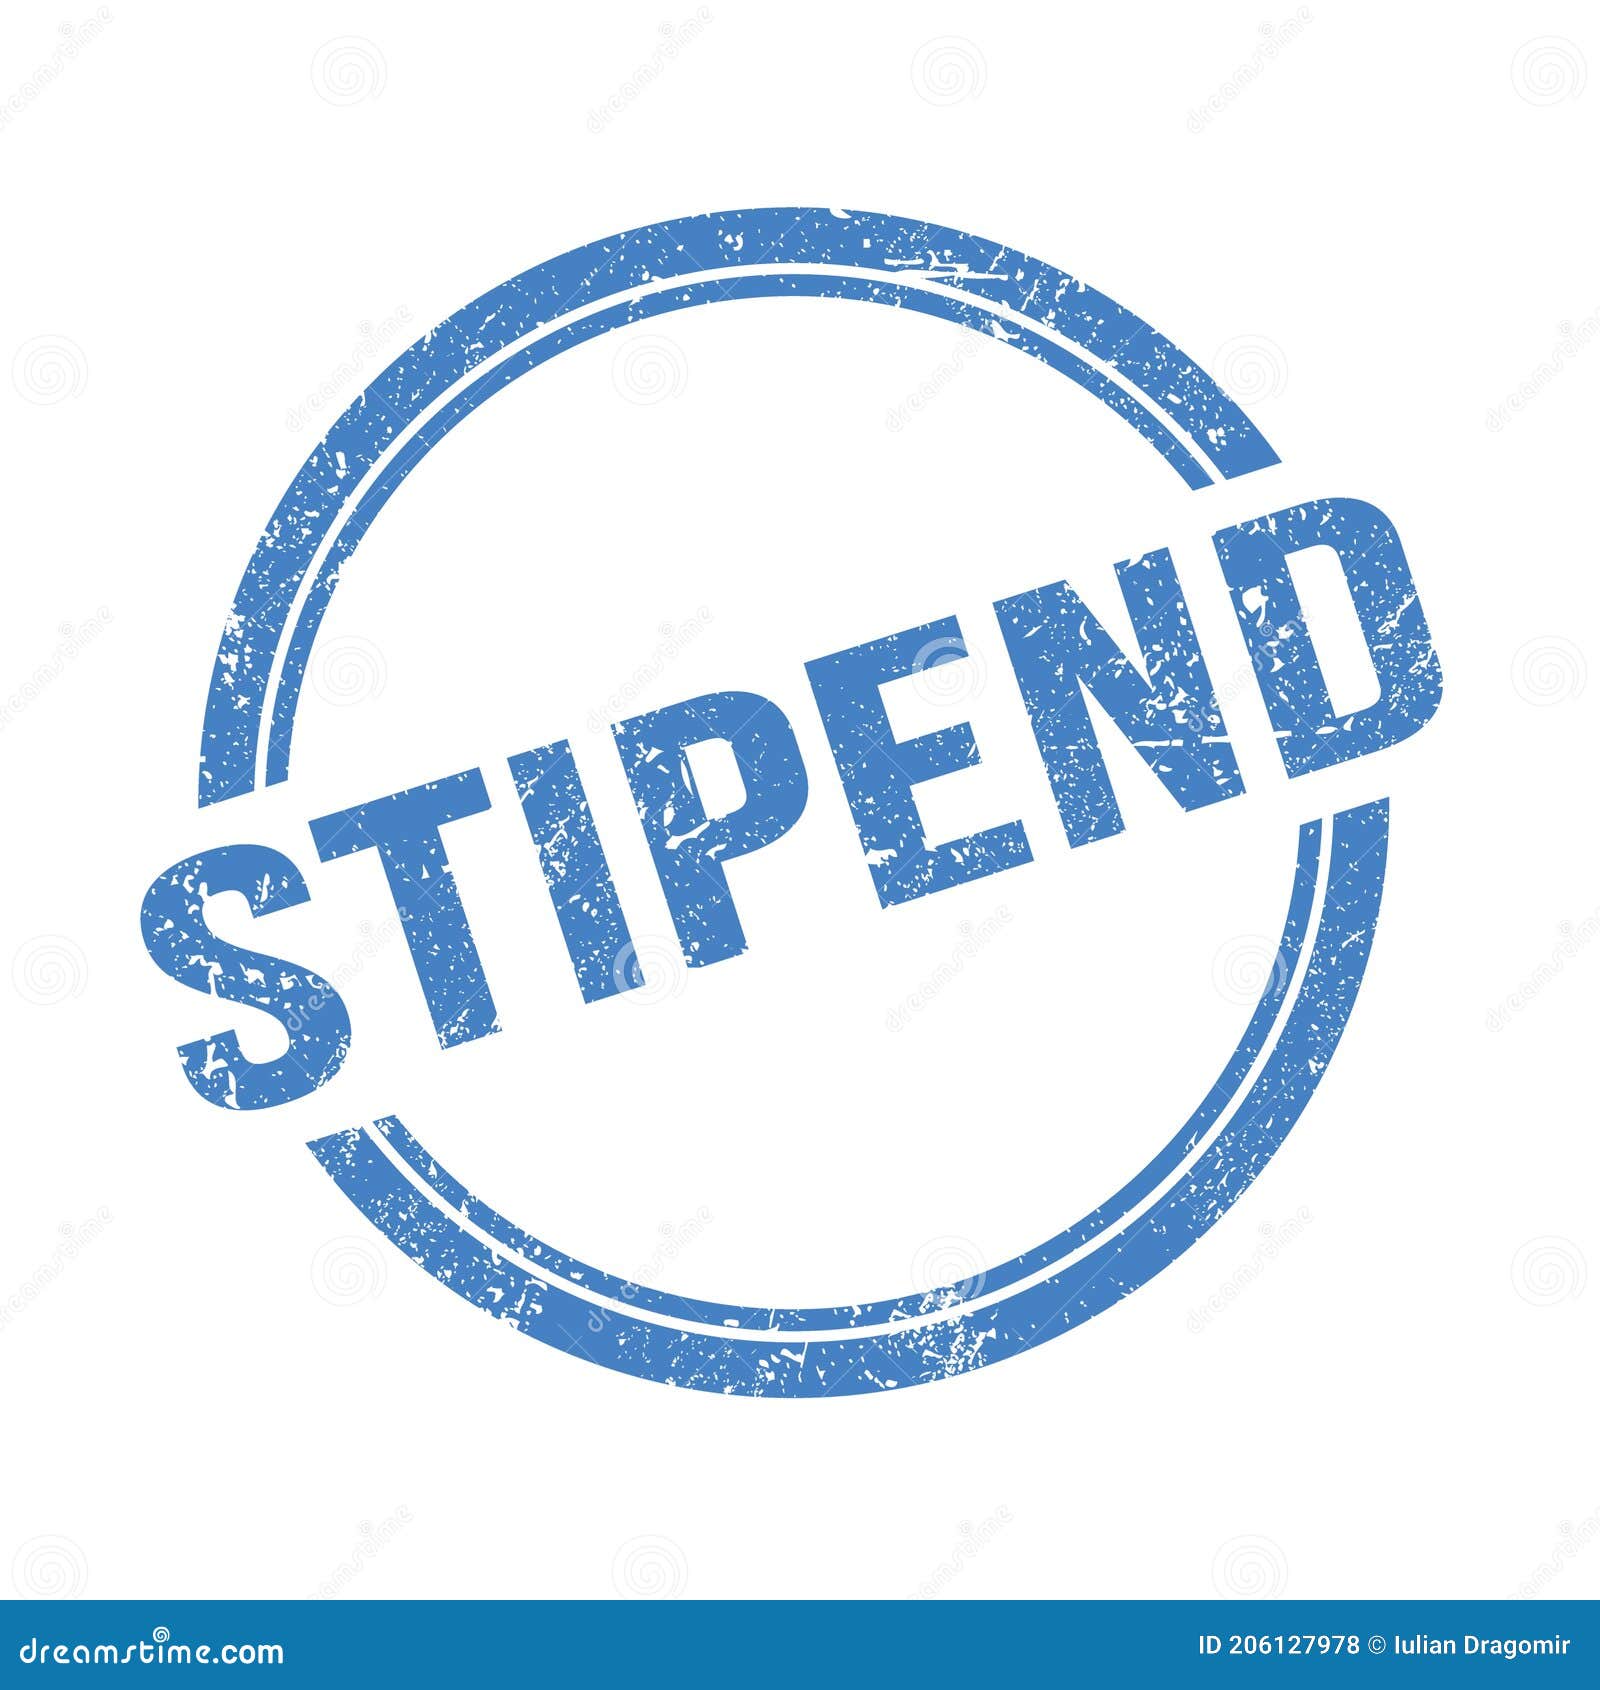 stipend text written on blue grungy round stamp